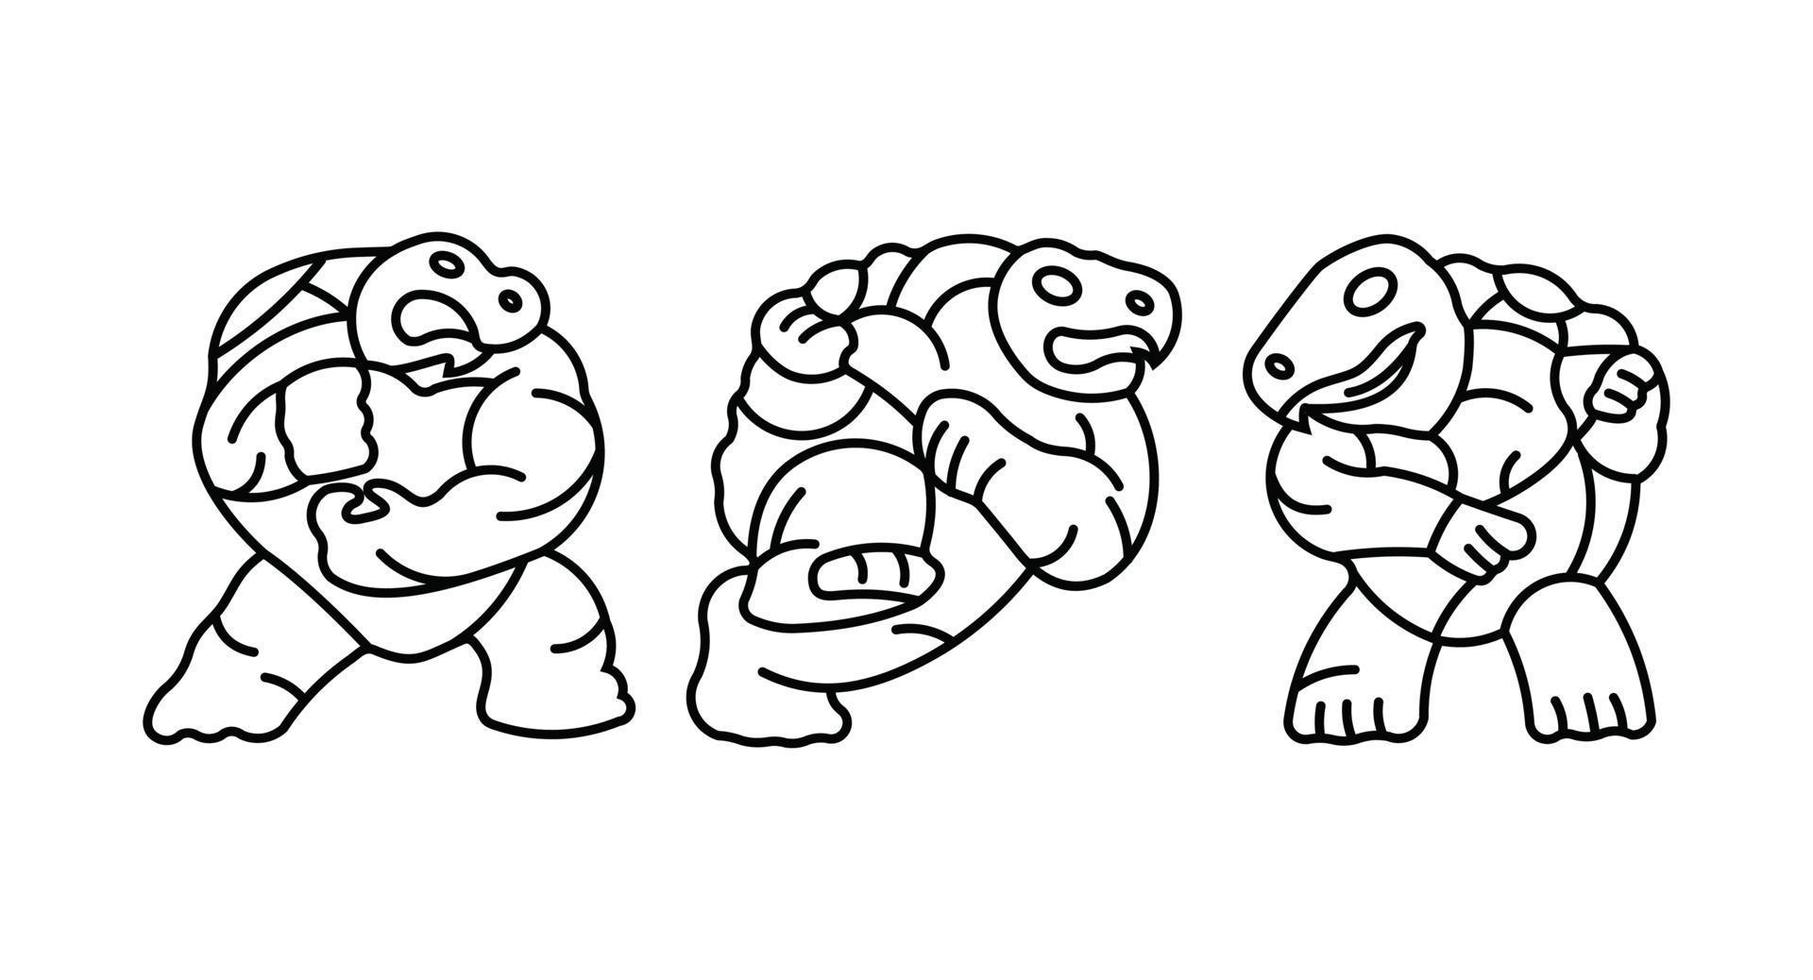 Schildkröten-Icon-Set in verschiedenen Stil-Vektor-Illustrationen, Schildkröten-Vektor-Icons-Set entworfen vektor